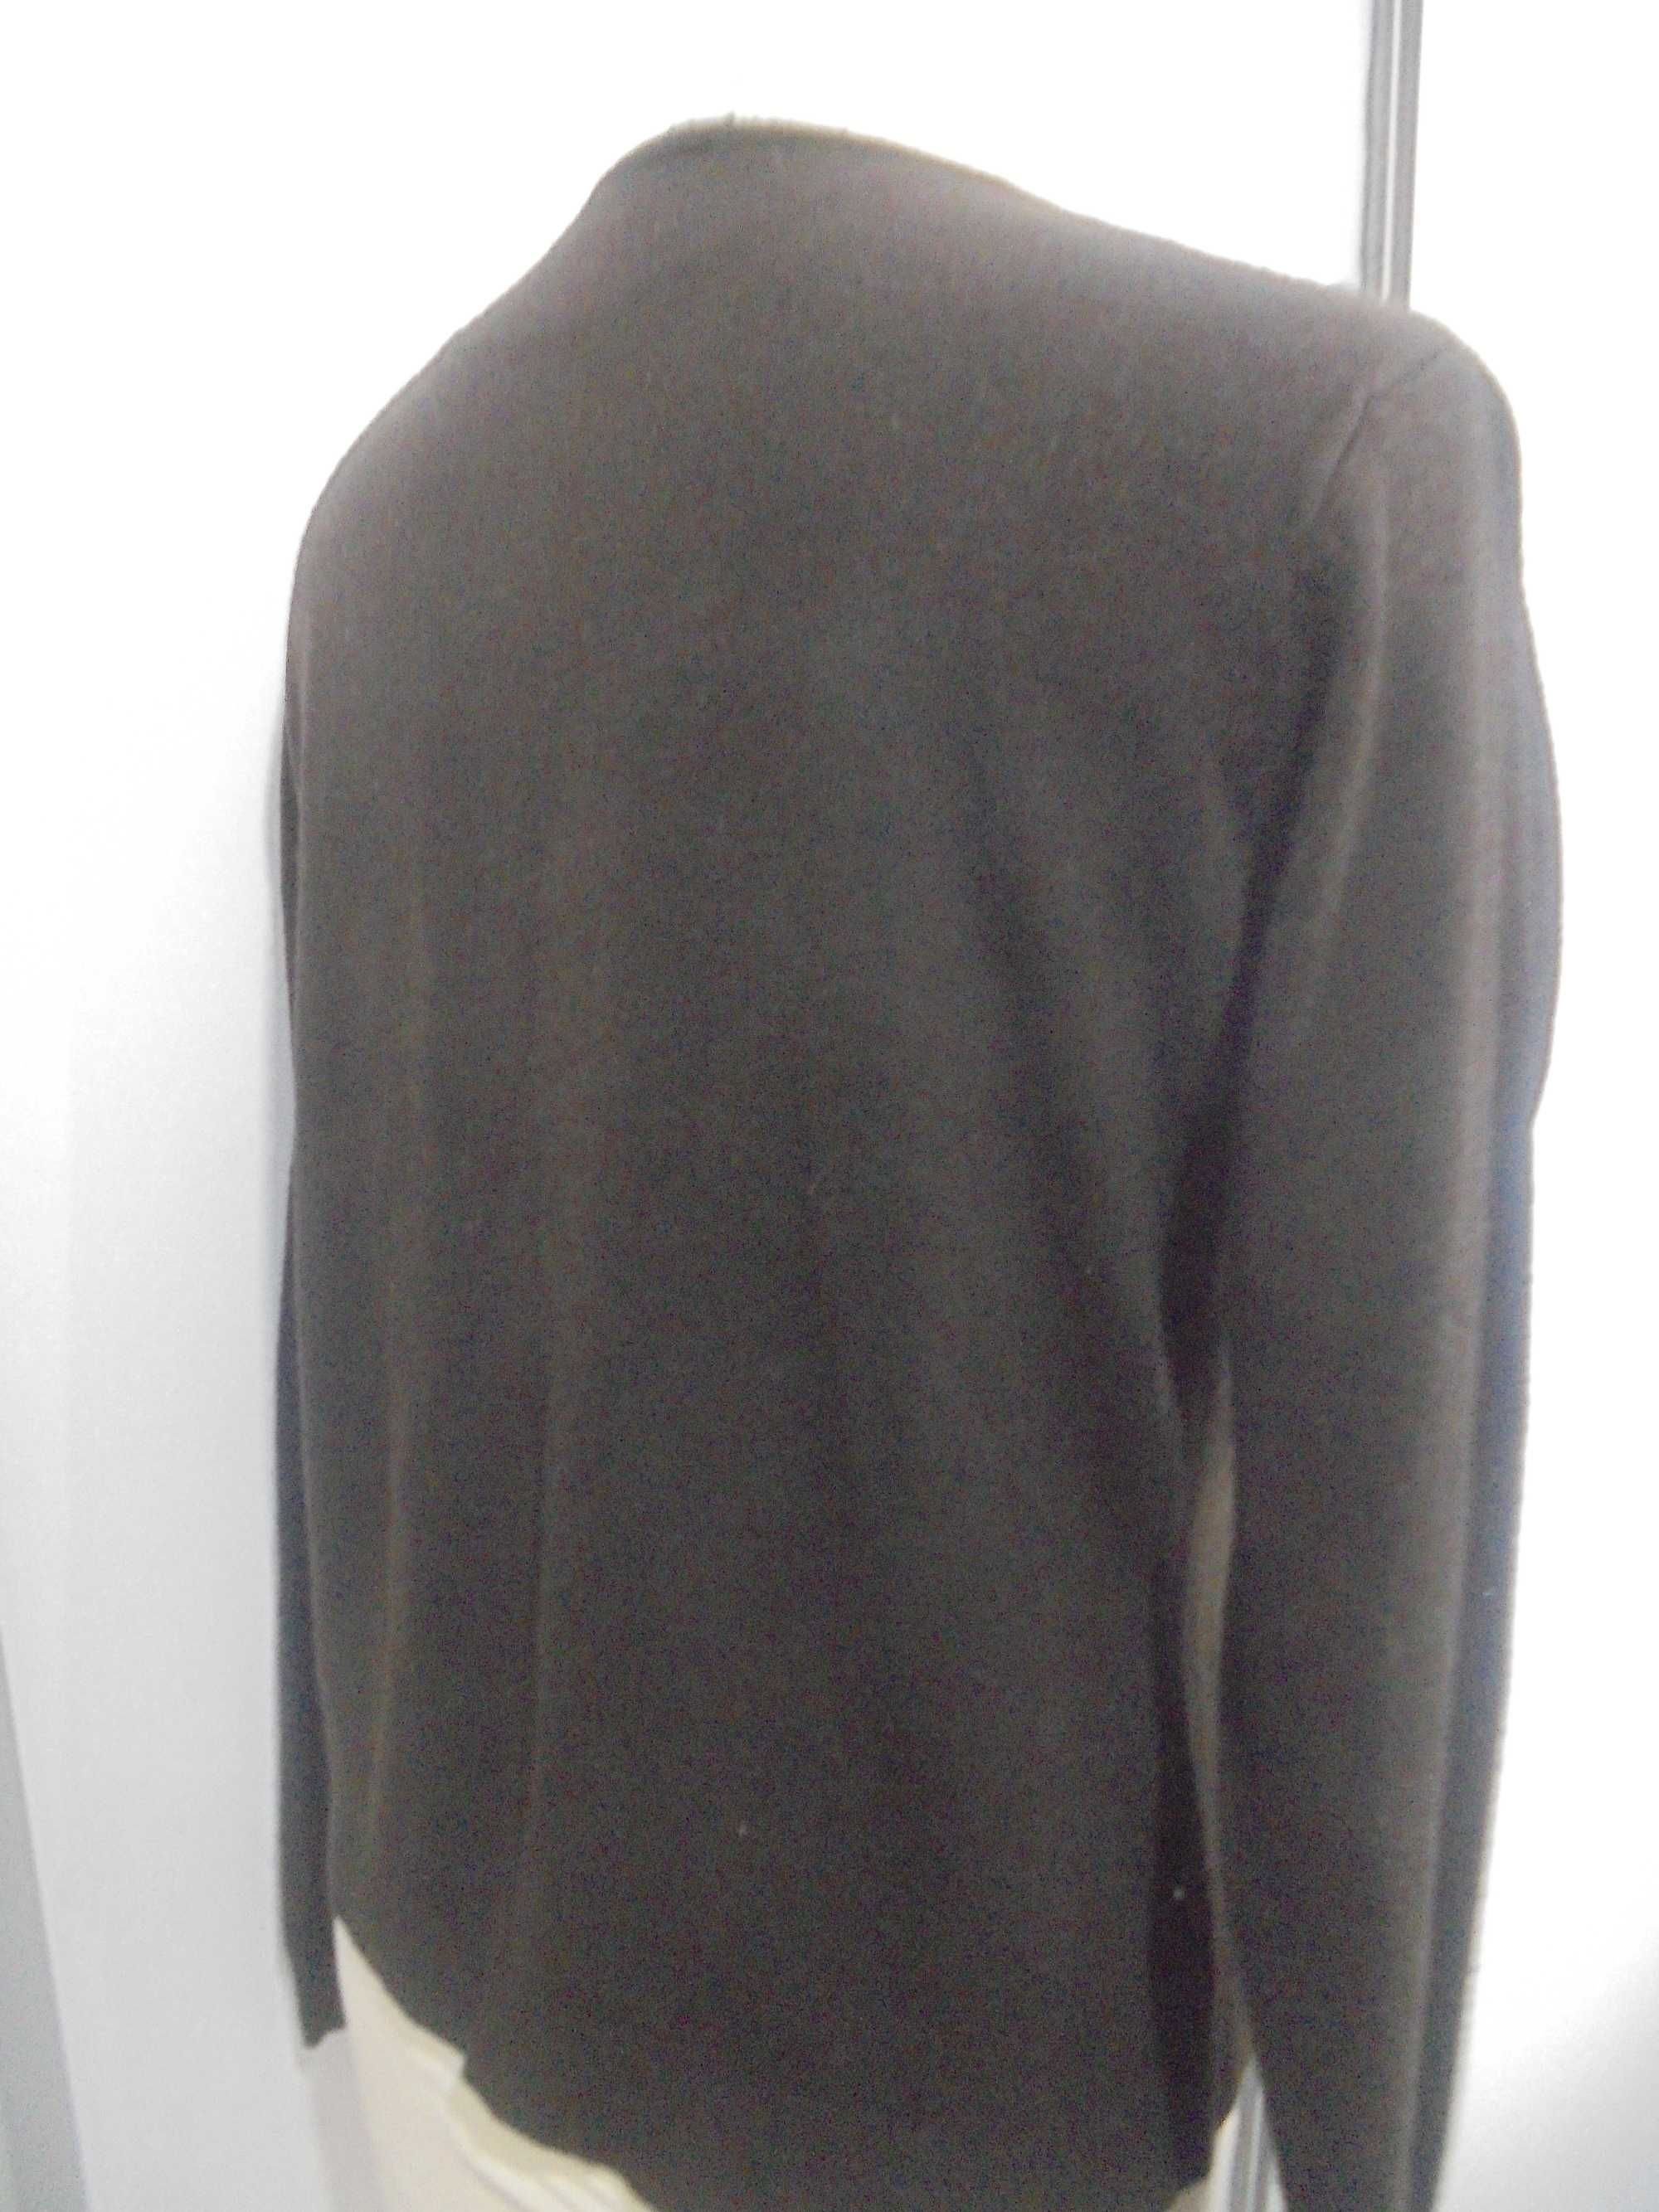 bluzka sweterkowa w szpic / roz42/44 atmosfere